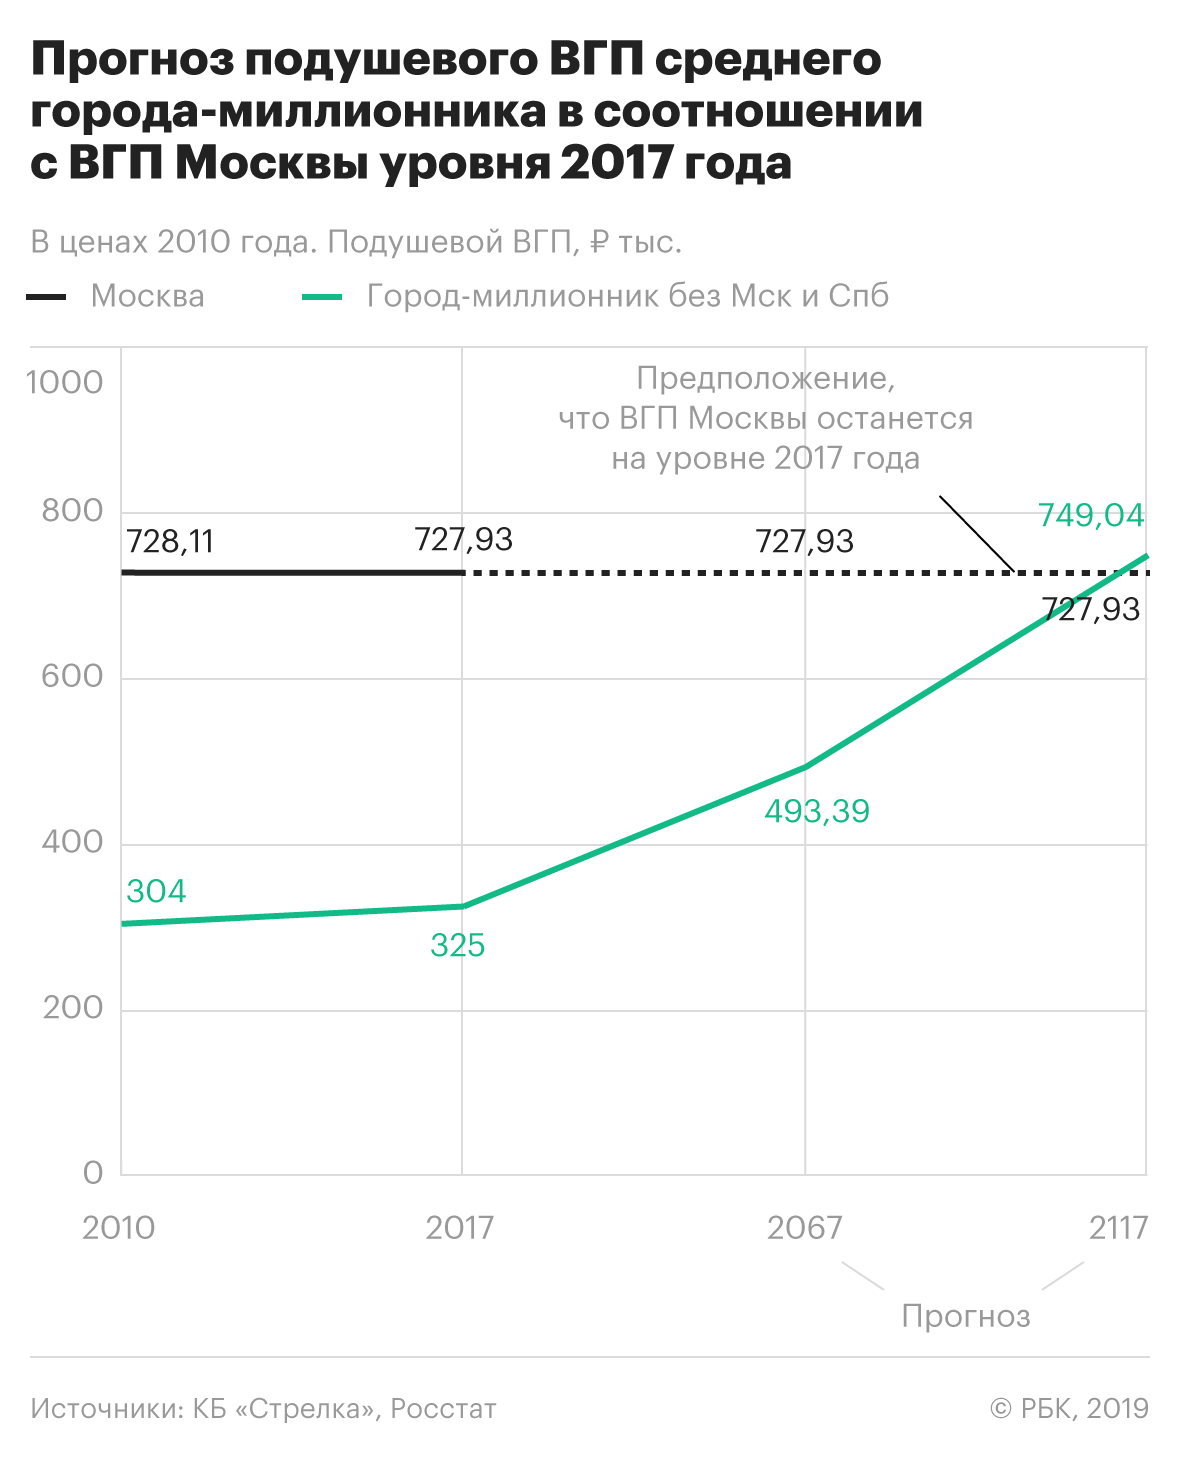 Города-миллионники отстали от Москвы по уровню экономики на 100 лет